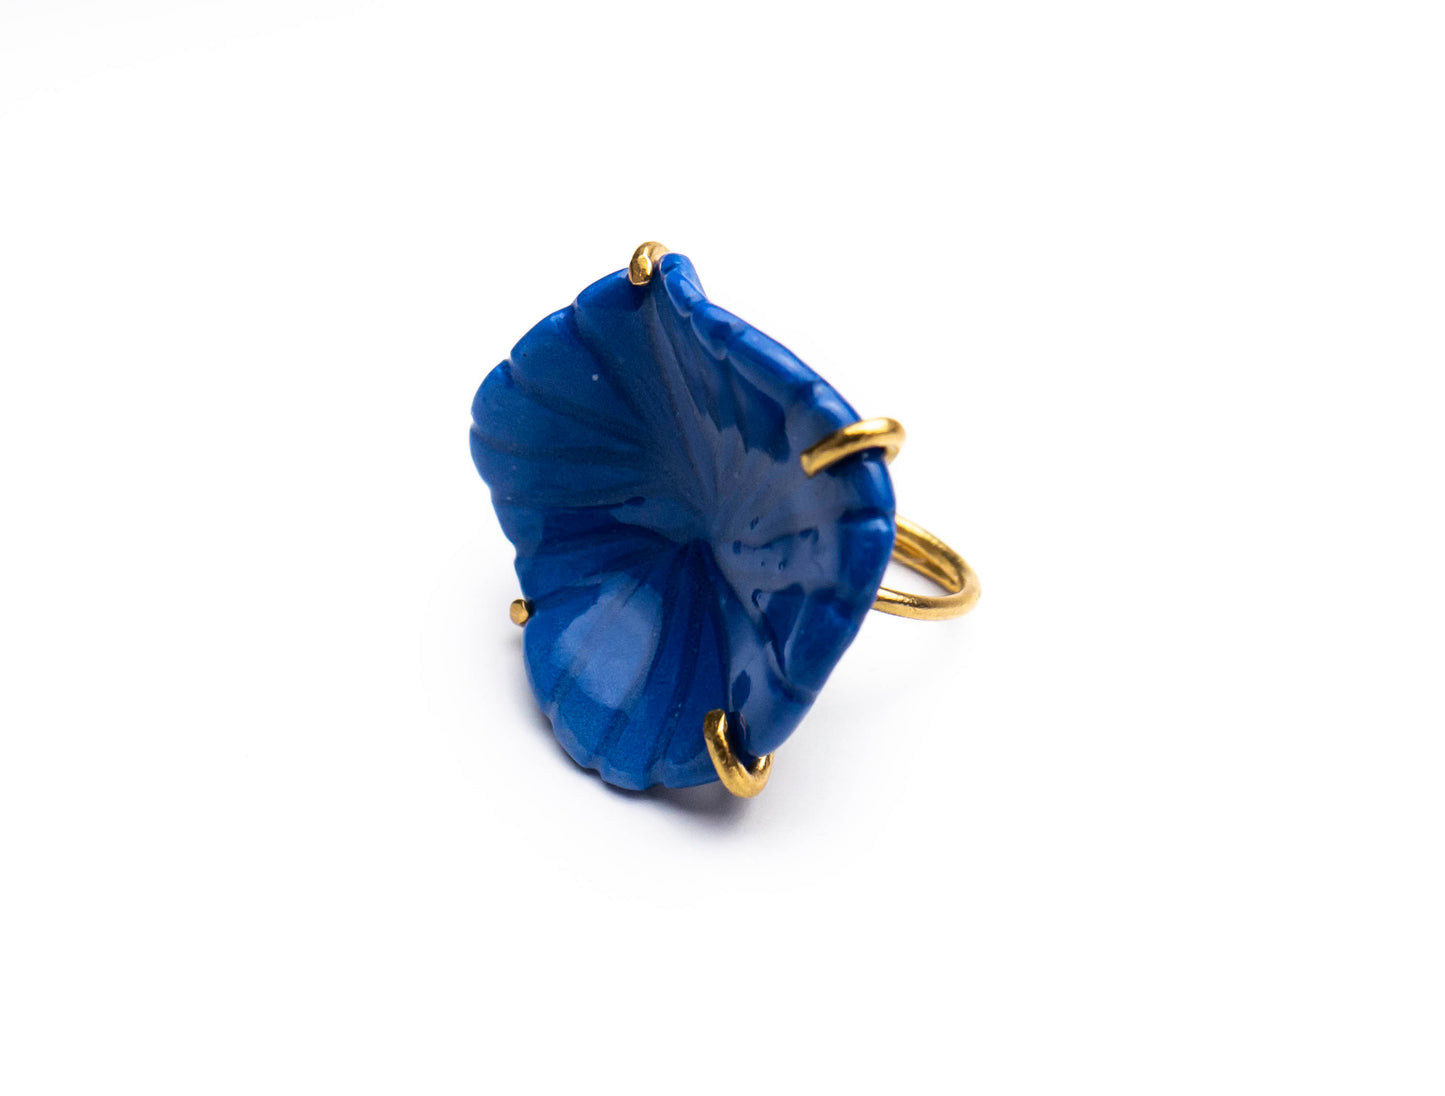 Δαχτυλίδι με λουλούδι μπλε πορσελάνης. 